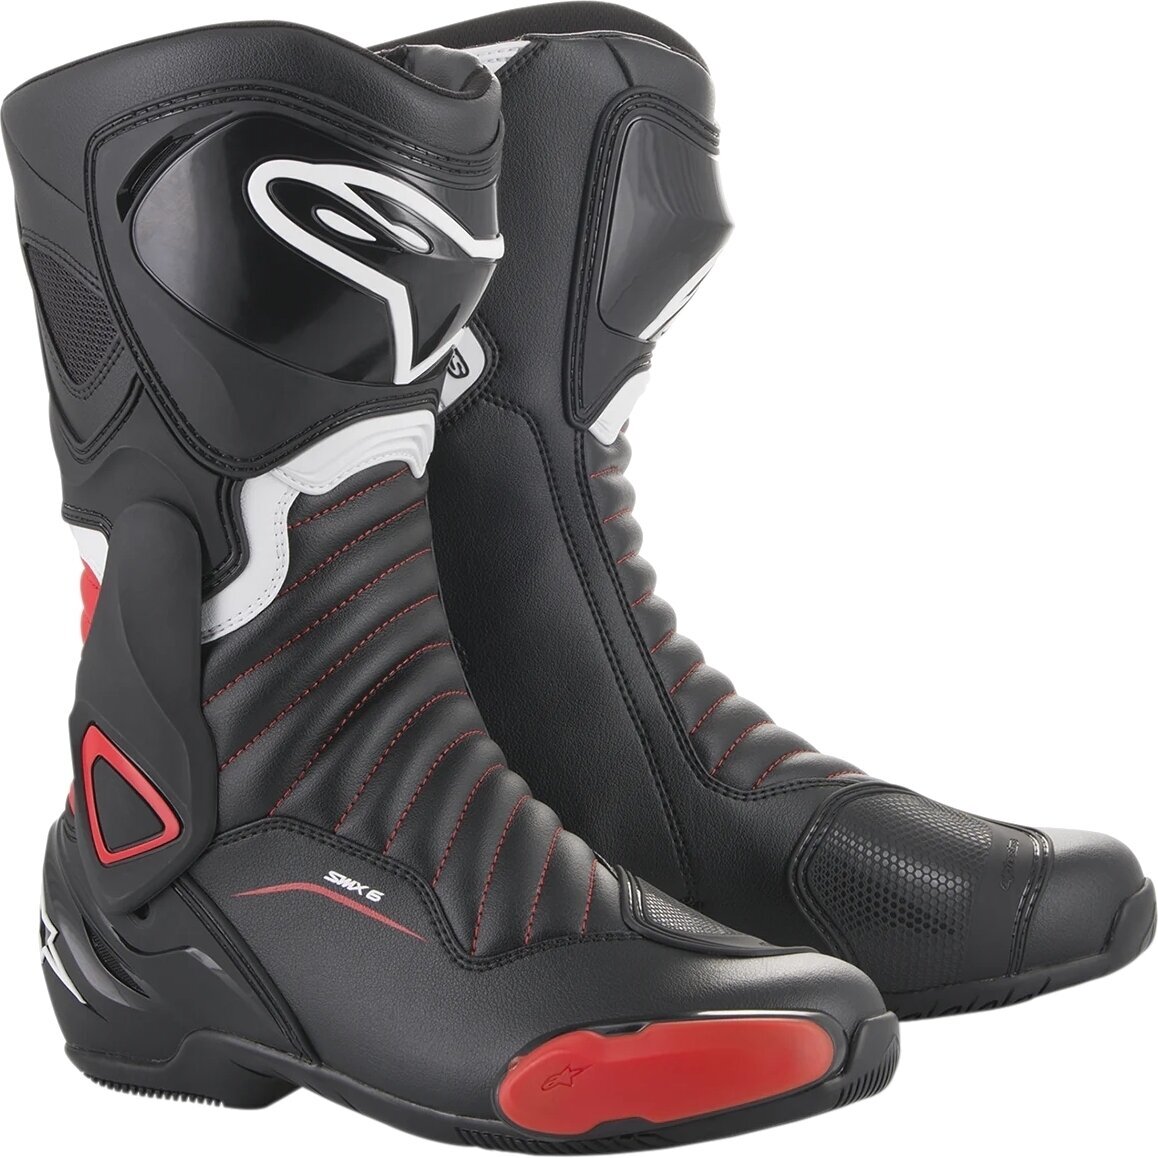 Boty Alpinestars SMX-6 V2 Boots Black/Gray/Red Fluo 42 Boty